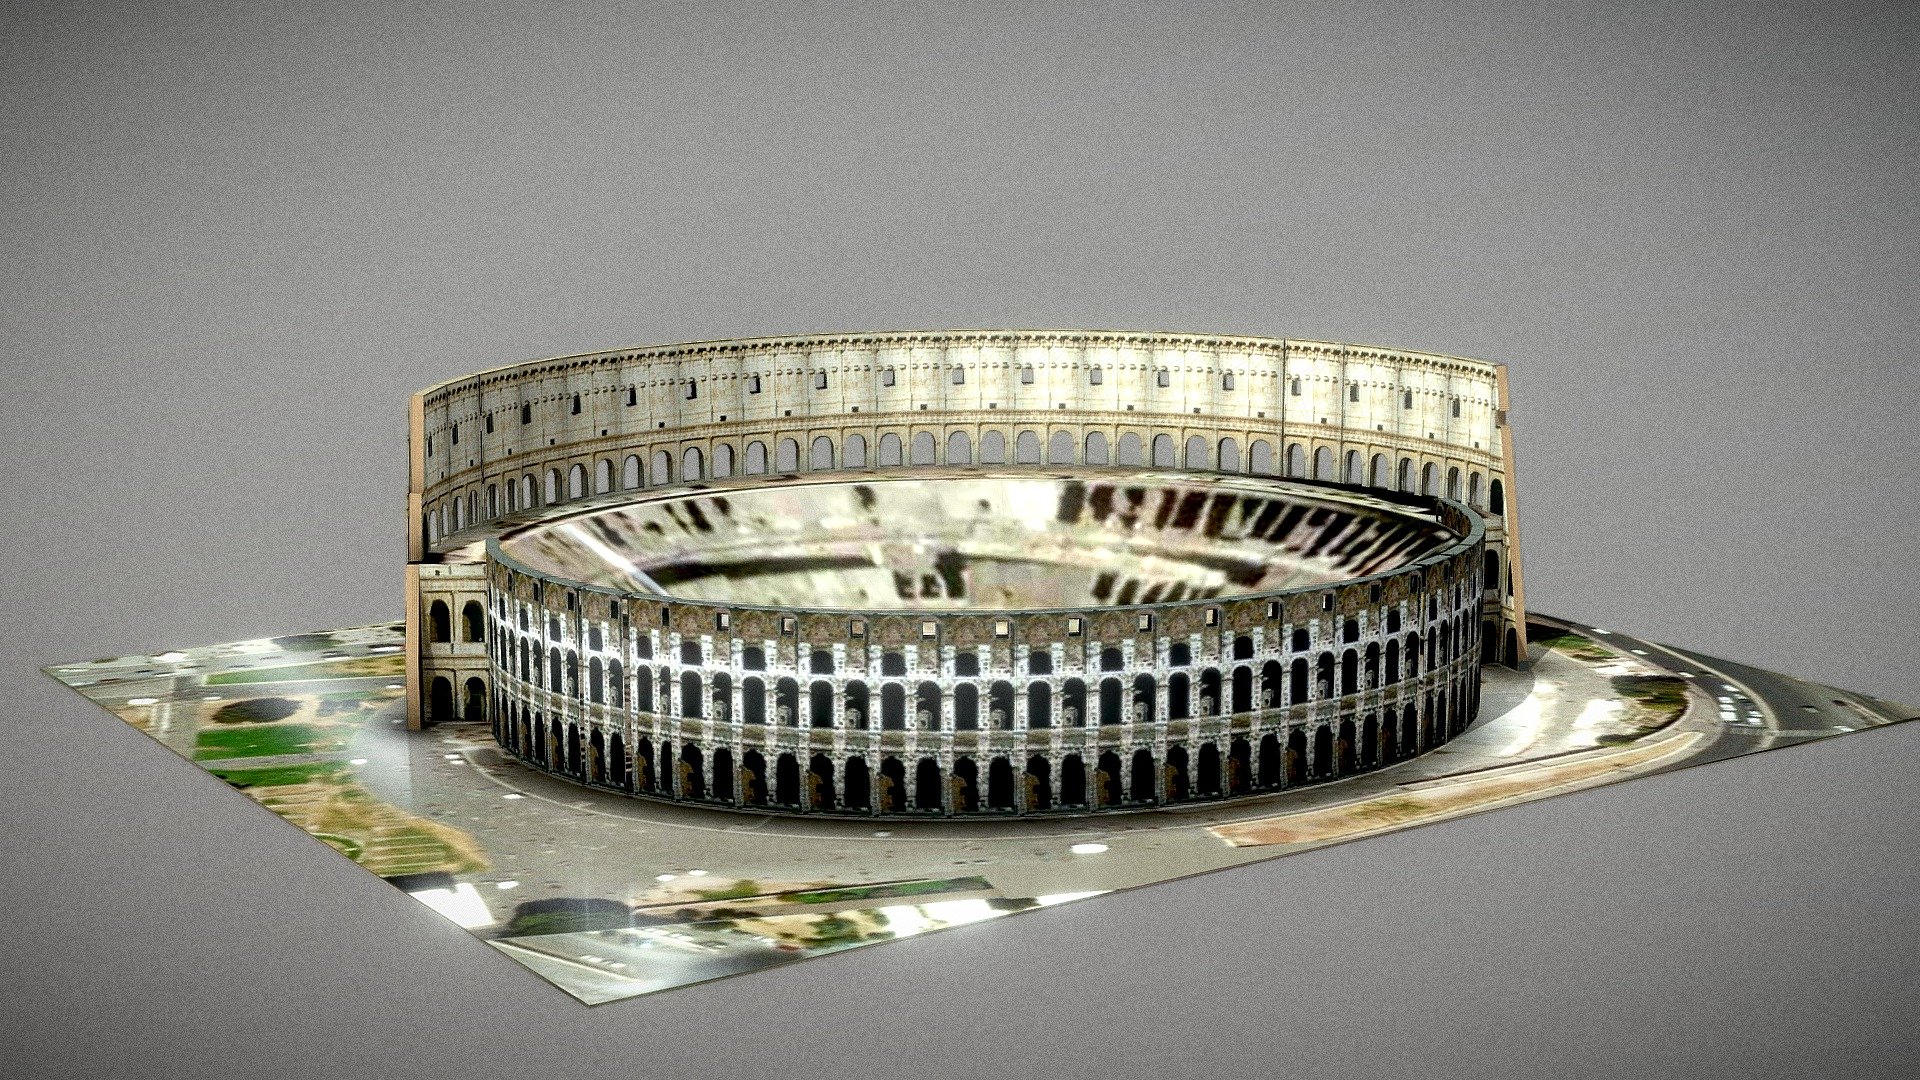 Coliseu Romano